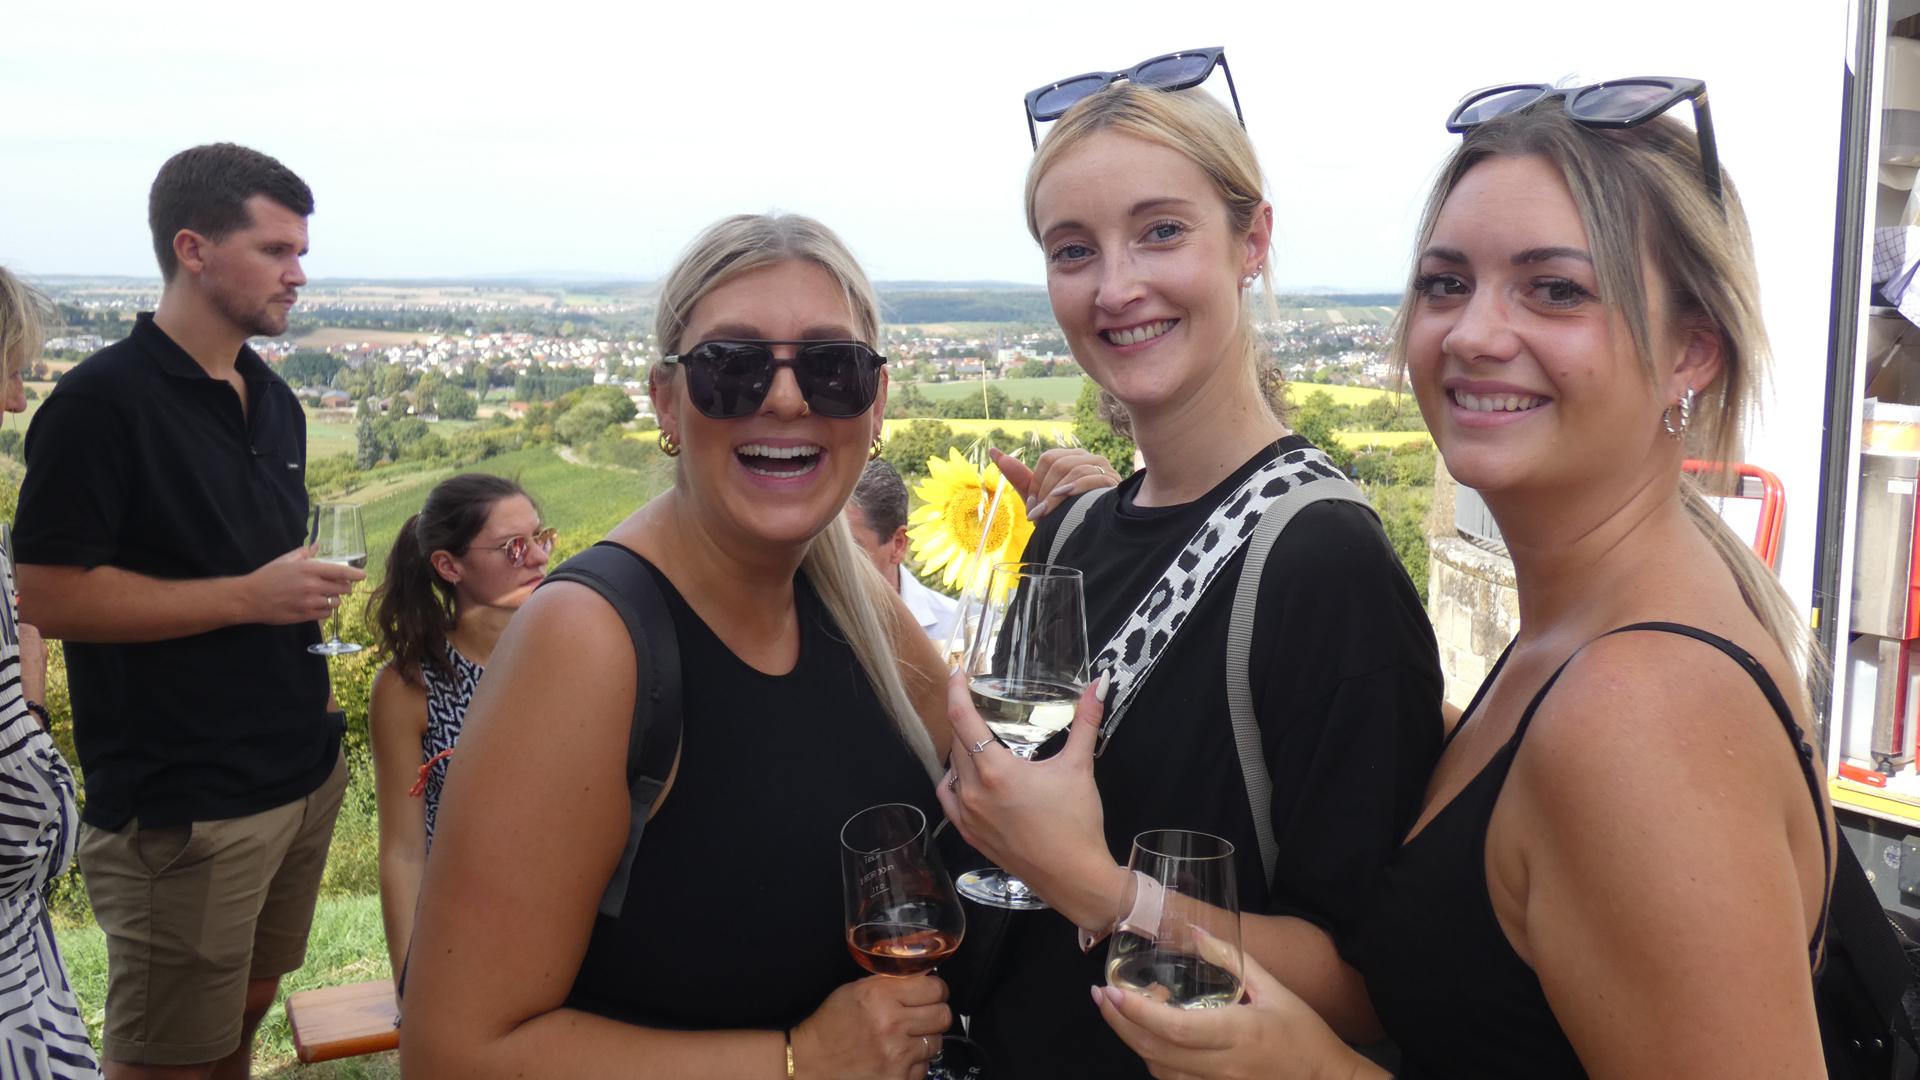 Drei Frauen in Partykleidung halten Weingläser in der Hand. Im Hintergrund sind weitere Personen zu sehen und ein Ausblick über eine Landschaft.